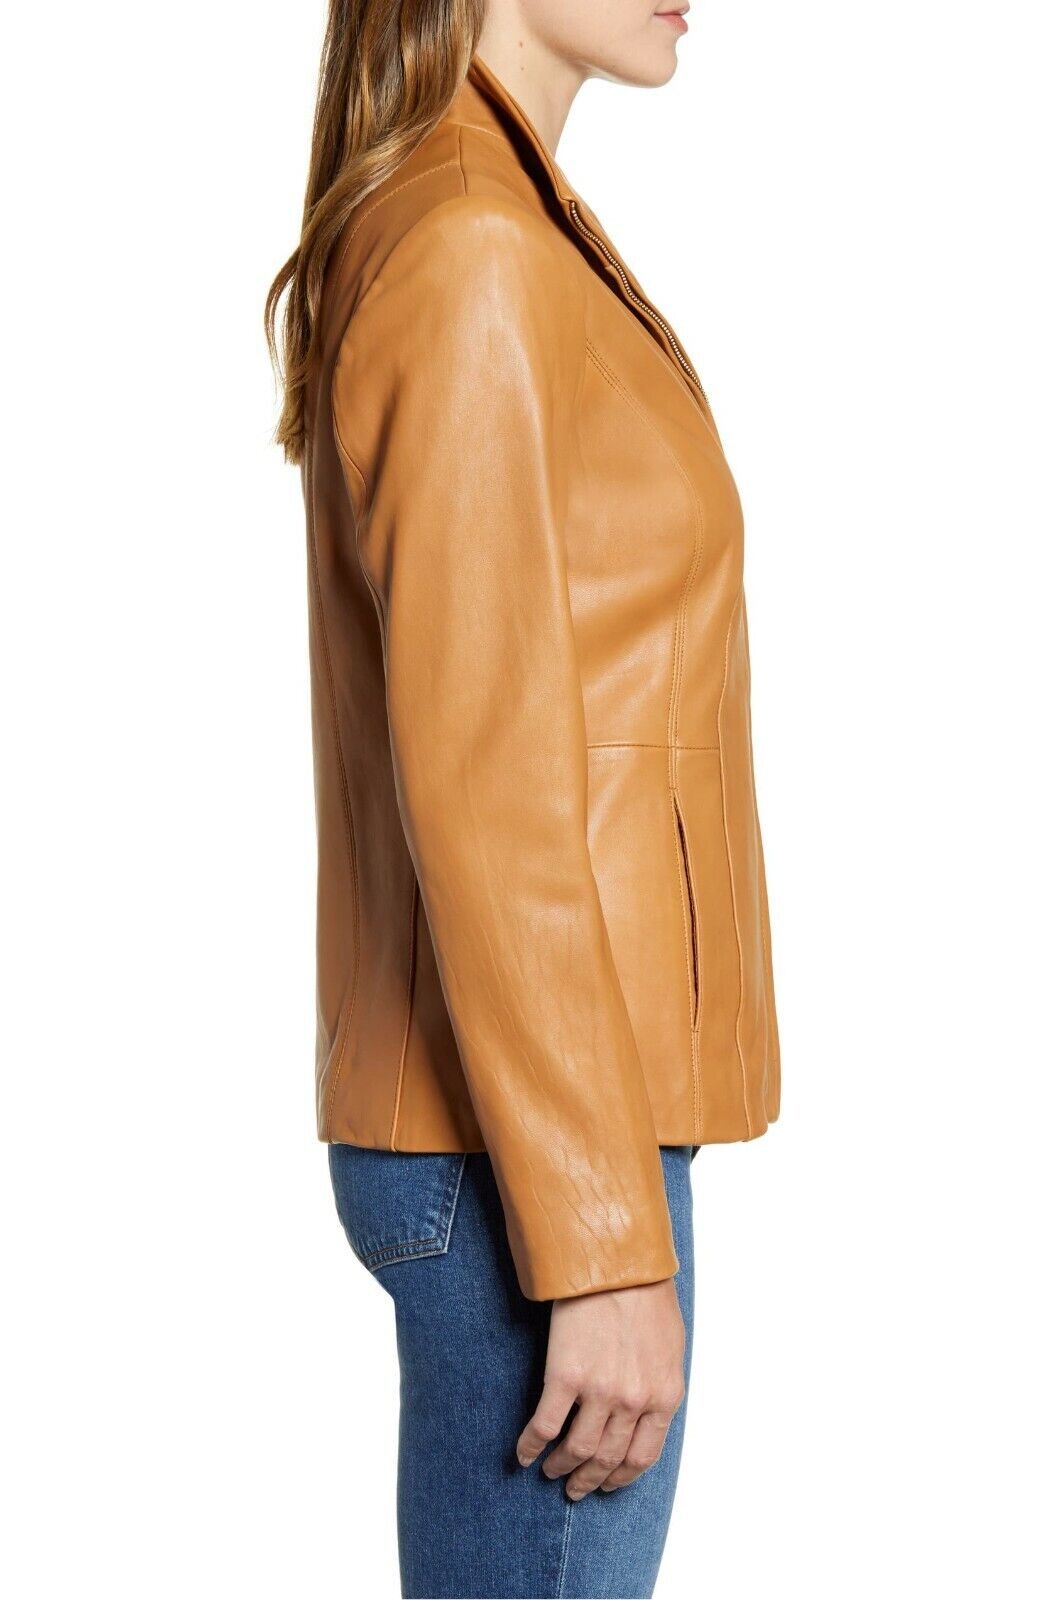 Genuine Women's Leather Jacket 100% Real Leather Slim Fit Stylish Coat  Jacket